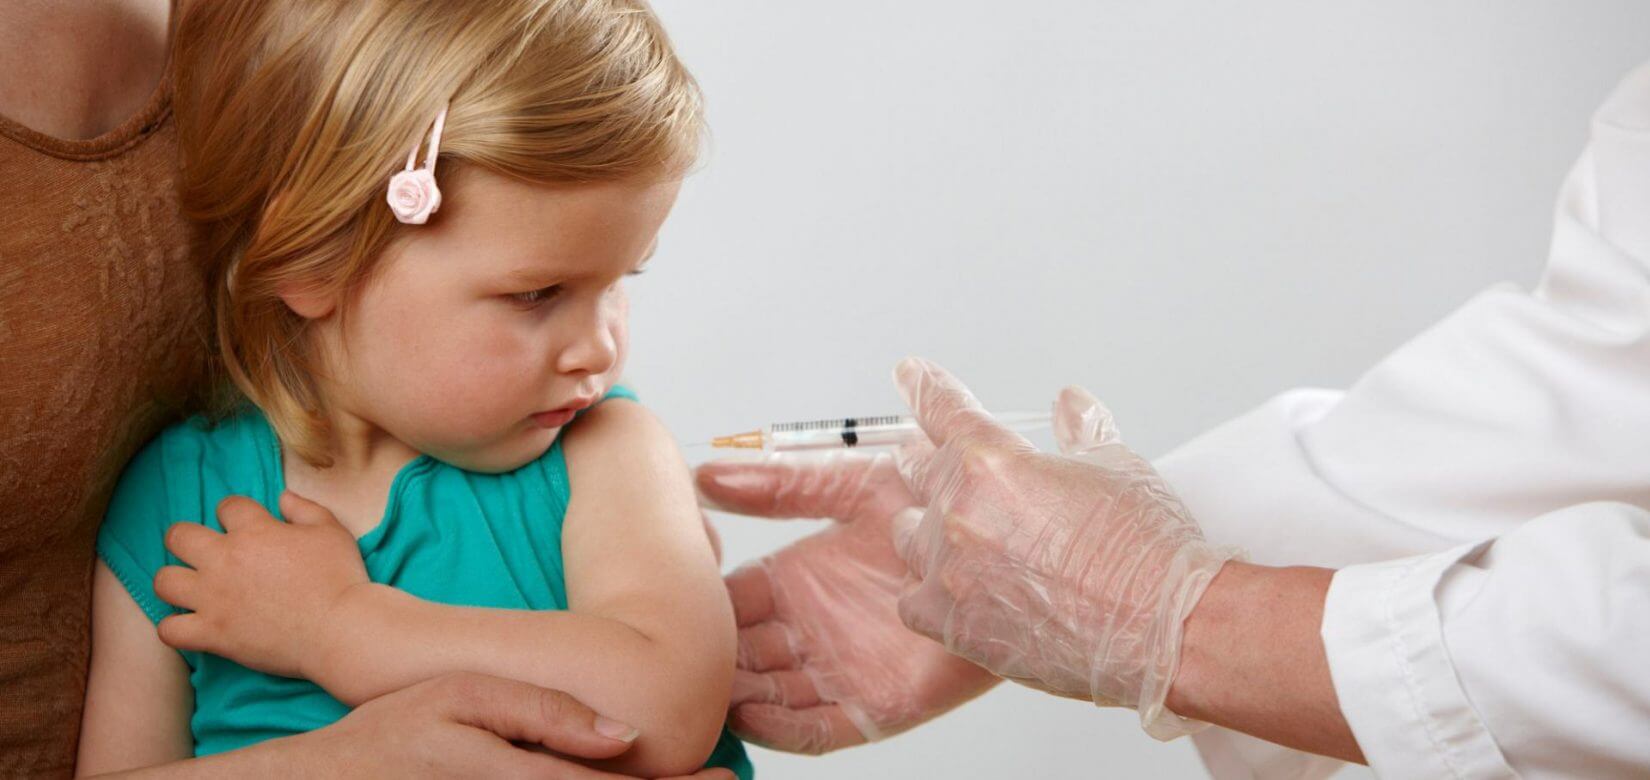 Κορονοϊός: Το εμβόλιο θα χορηγηθεί στα παιδιά 5-11 ετών πριν από τα Χριστούγεννα - Στην Ιταλία